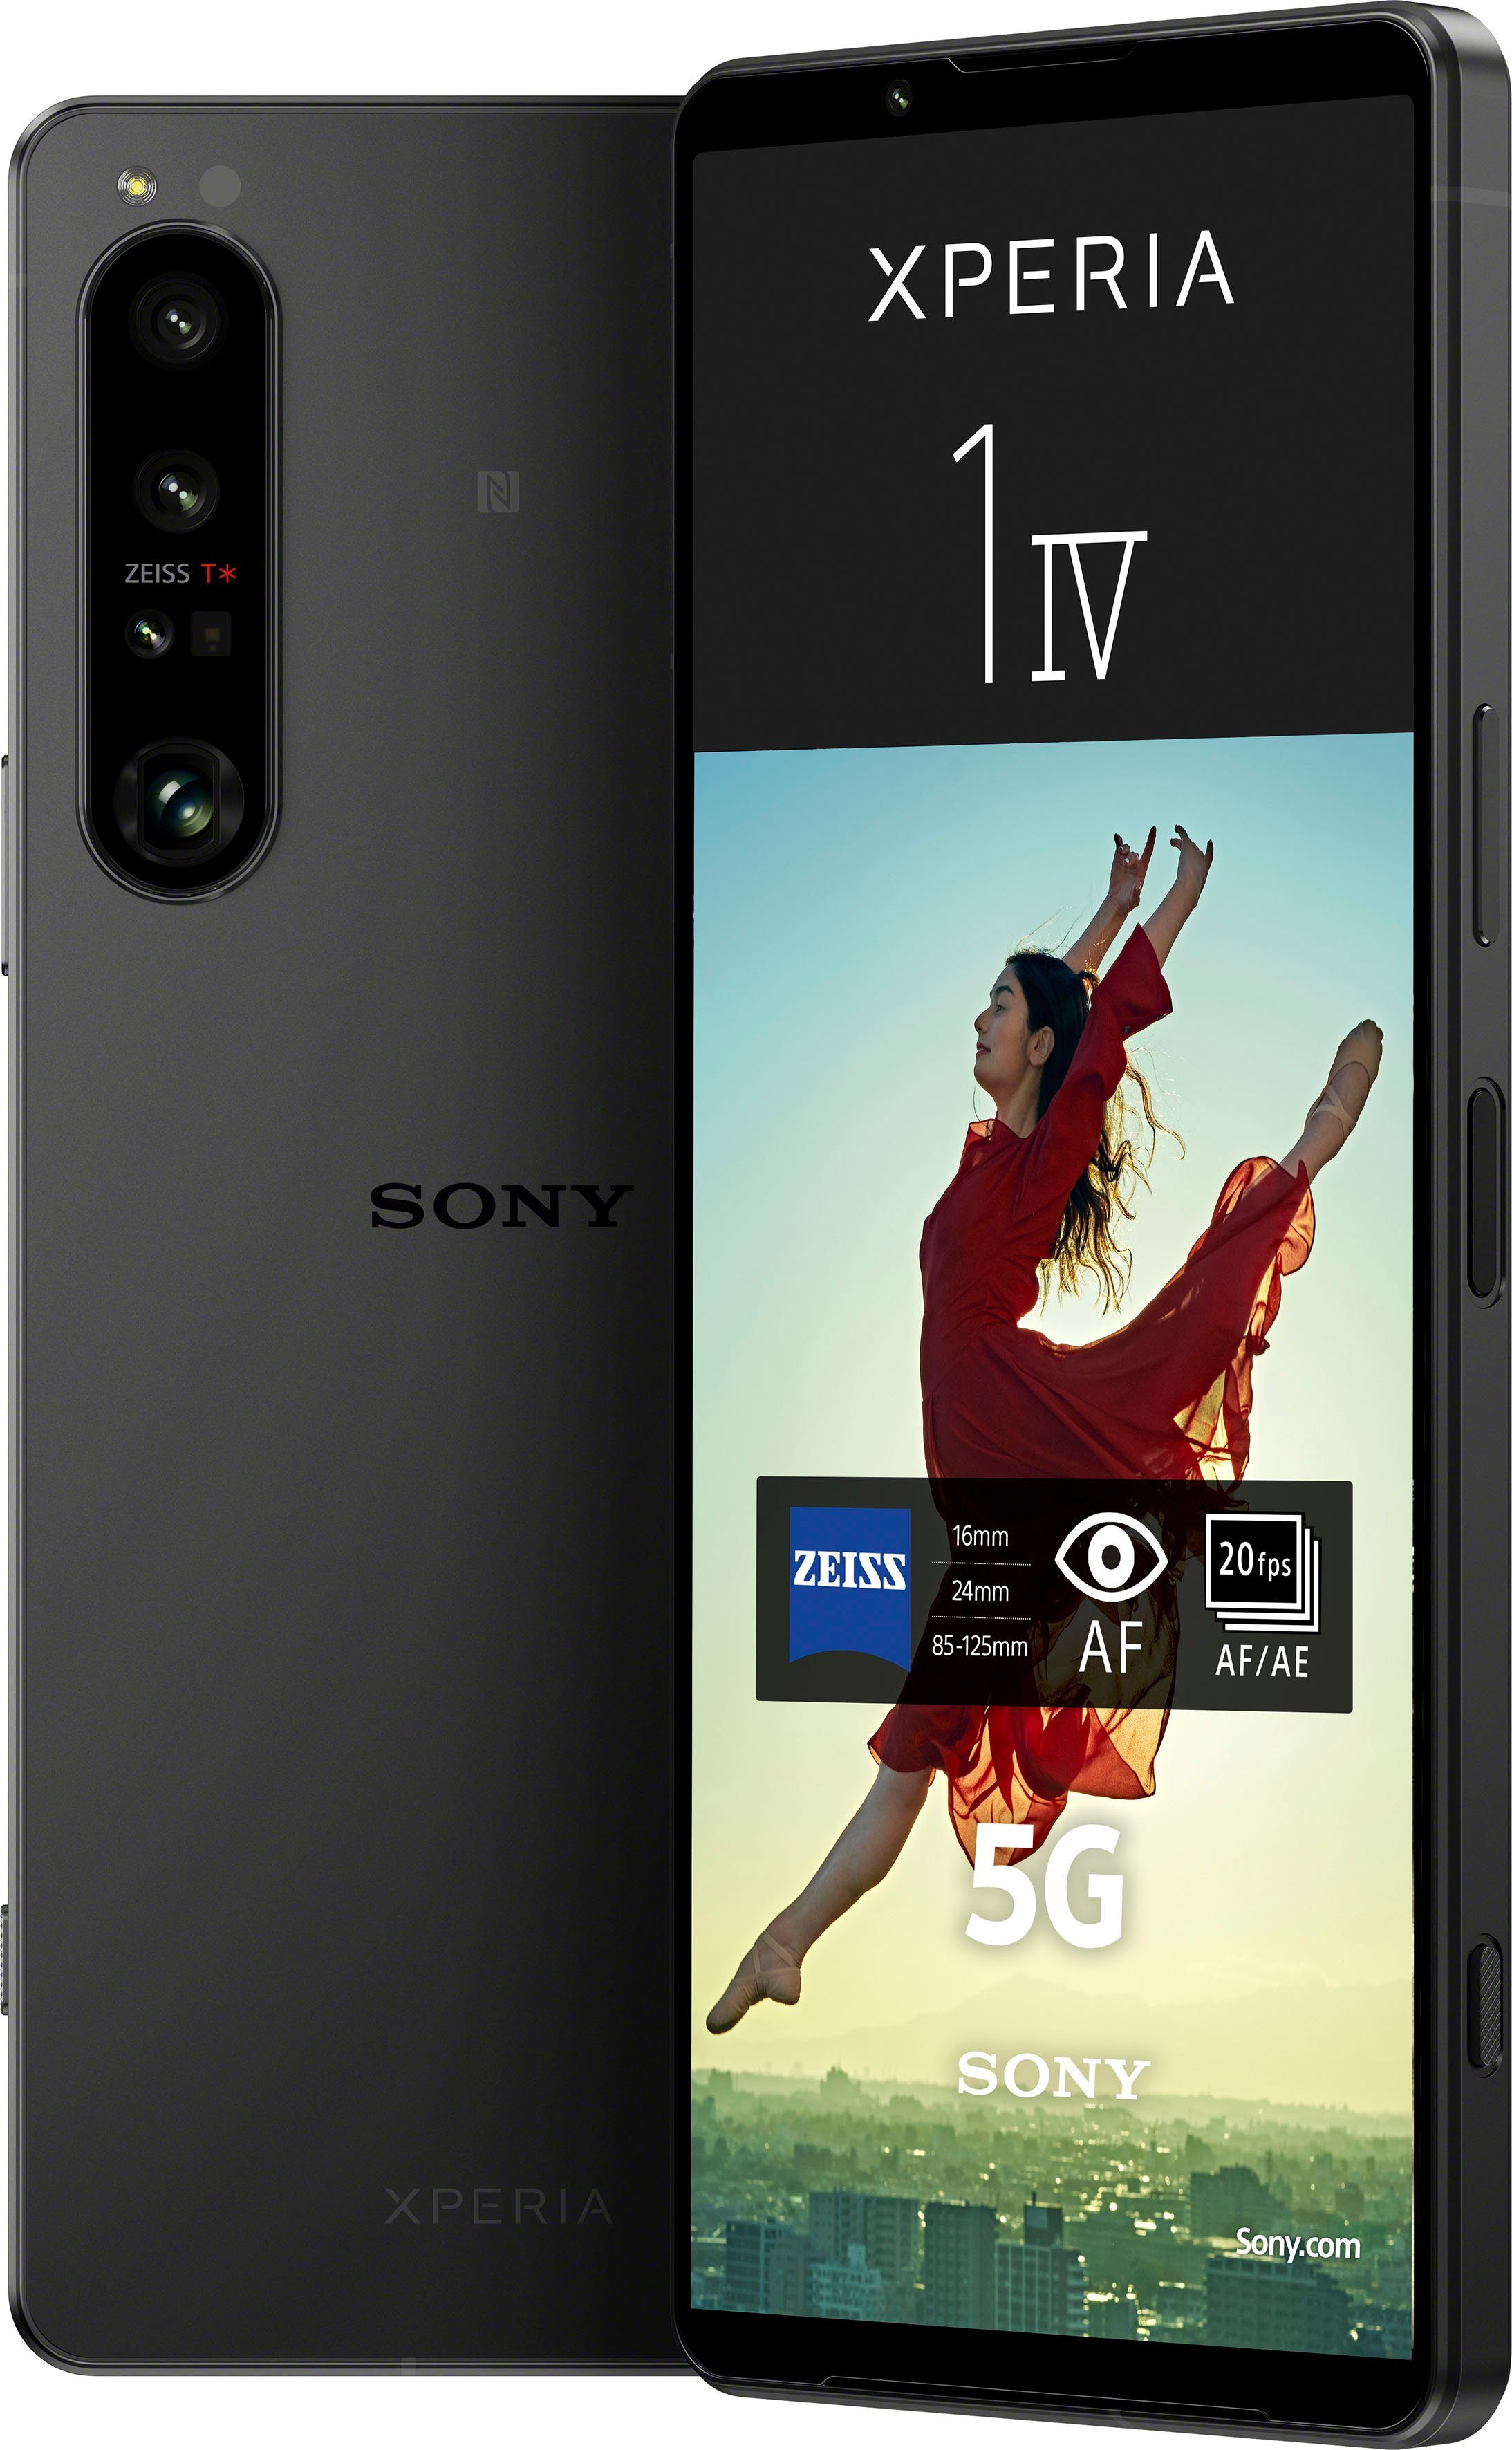 12 5G Sony (16,51 GB Smartphone XPERIA cm/6,5 1 Zoll, Speicherplatz, IV 256